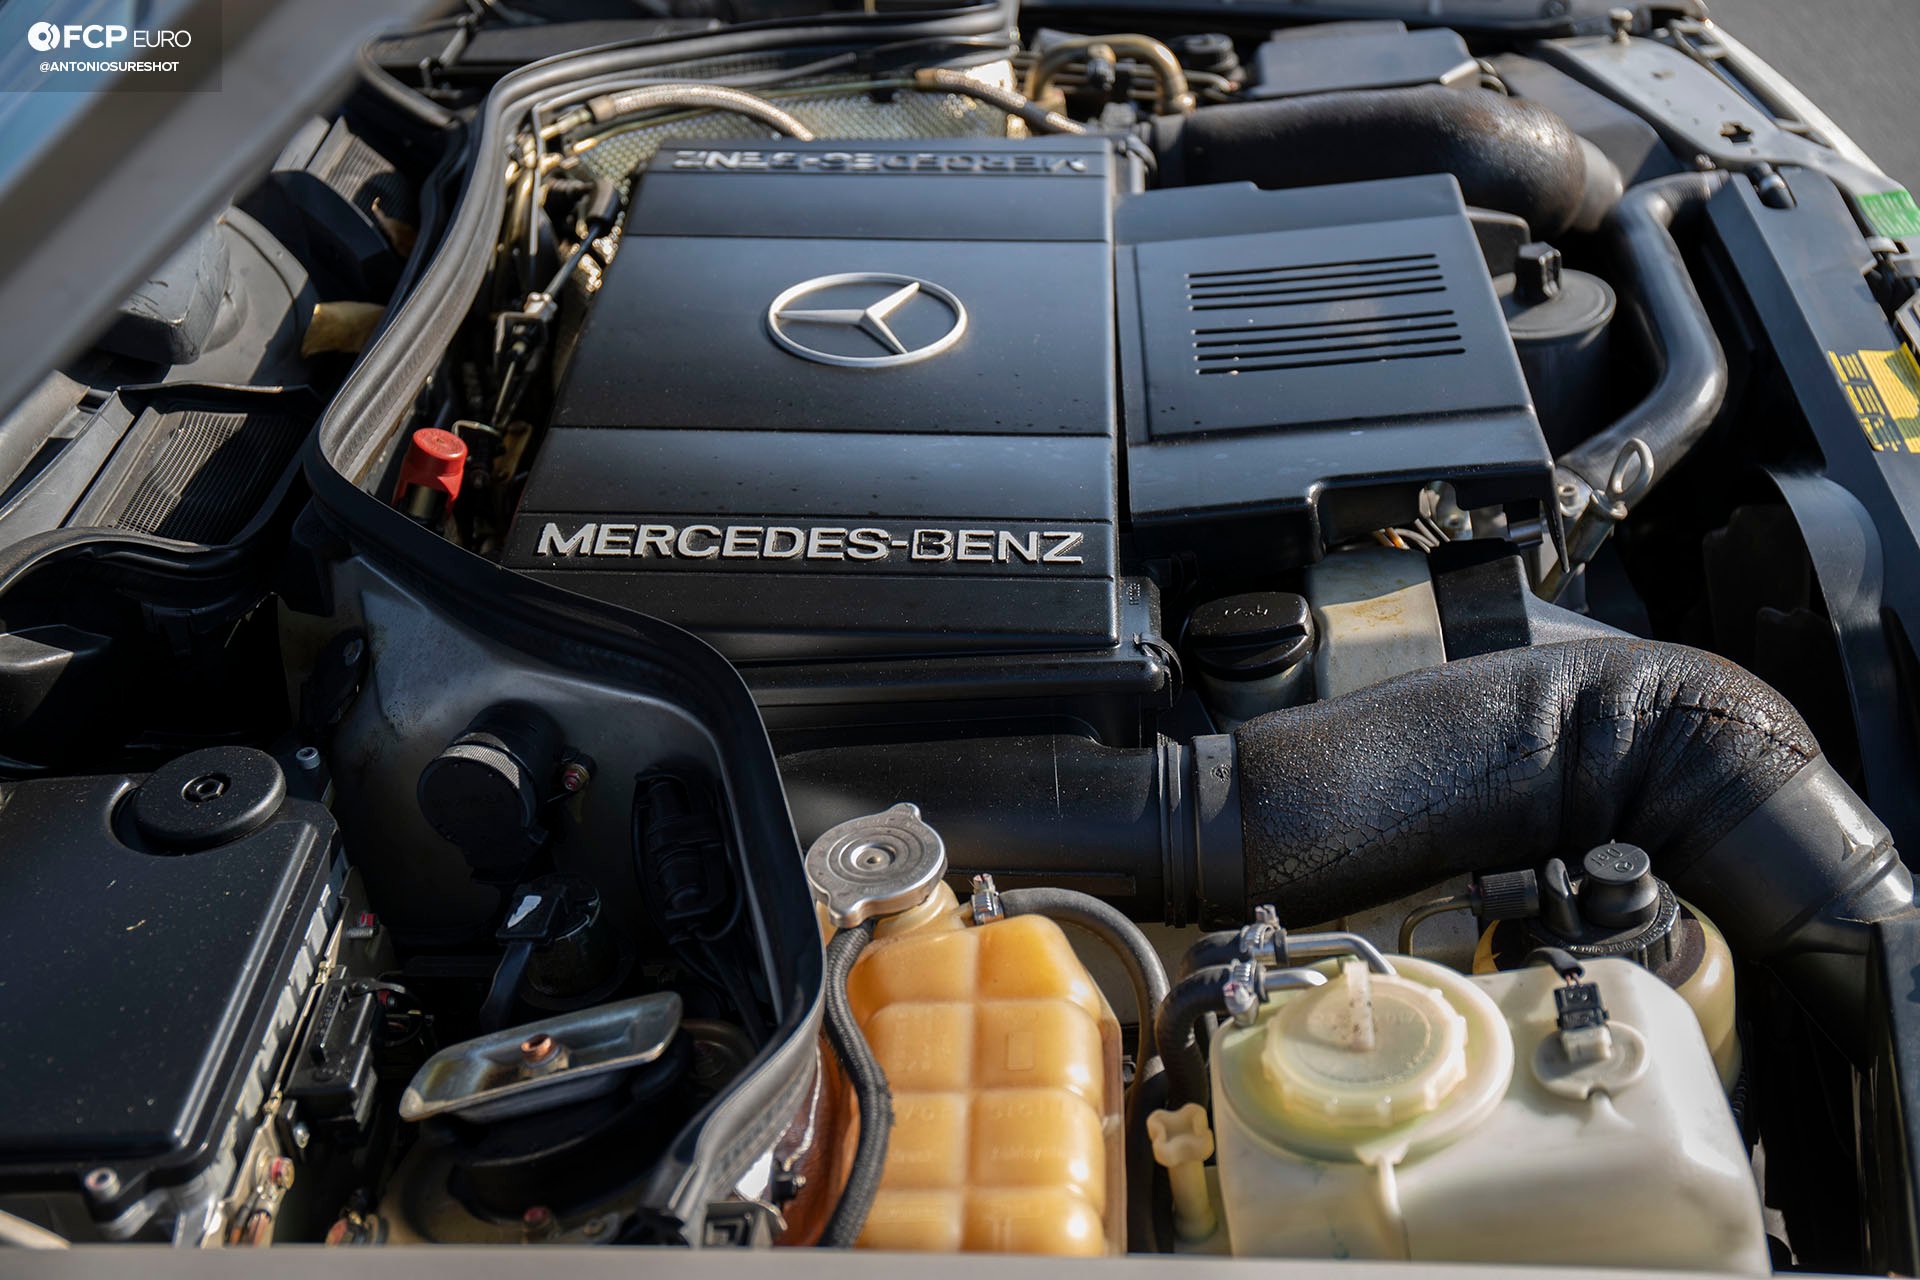 Mercedes Benz 500 E 5.0 V8 engine